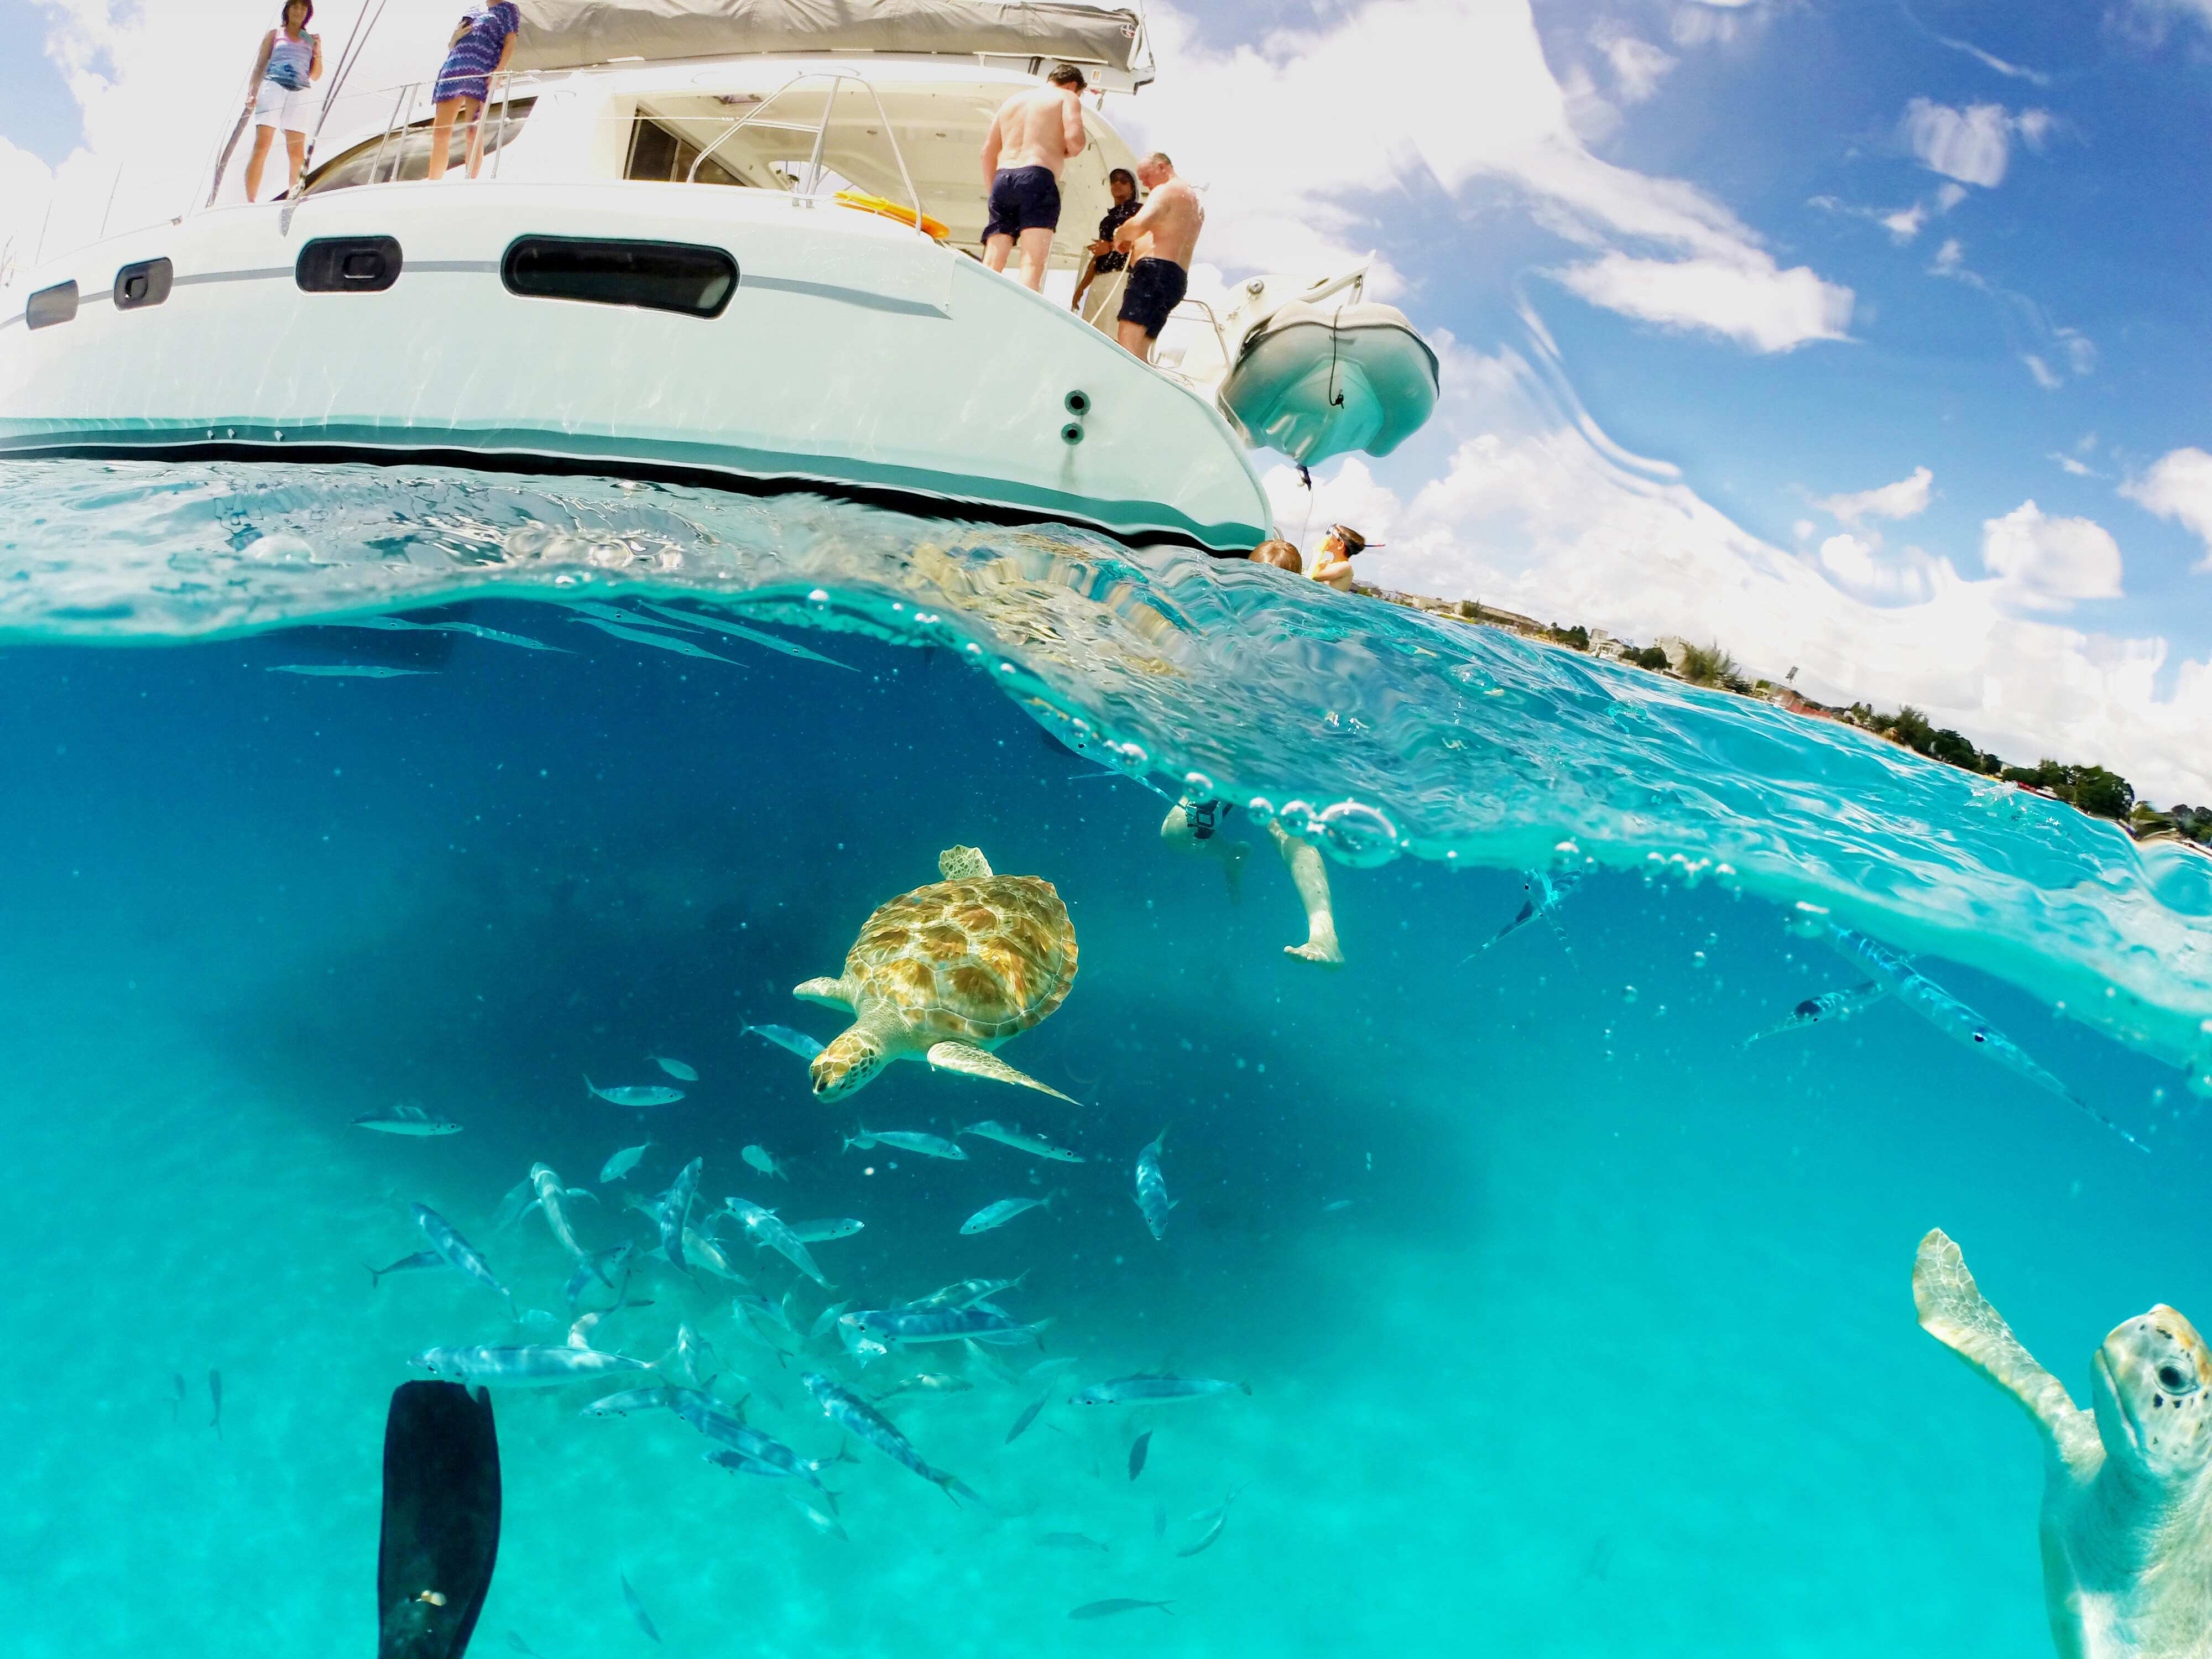 Schnorcheln mit Wasserschildkröten auf der Insel Barbados - ein tolles Erlebnis